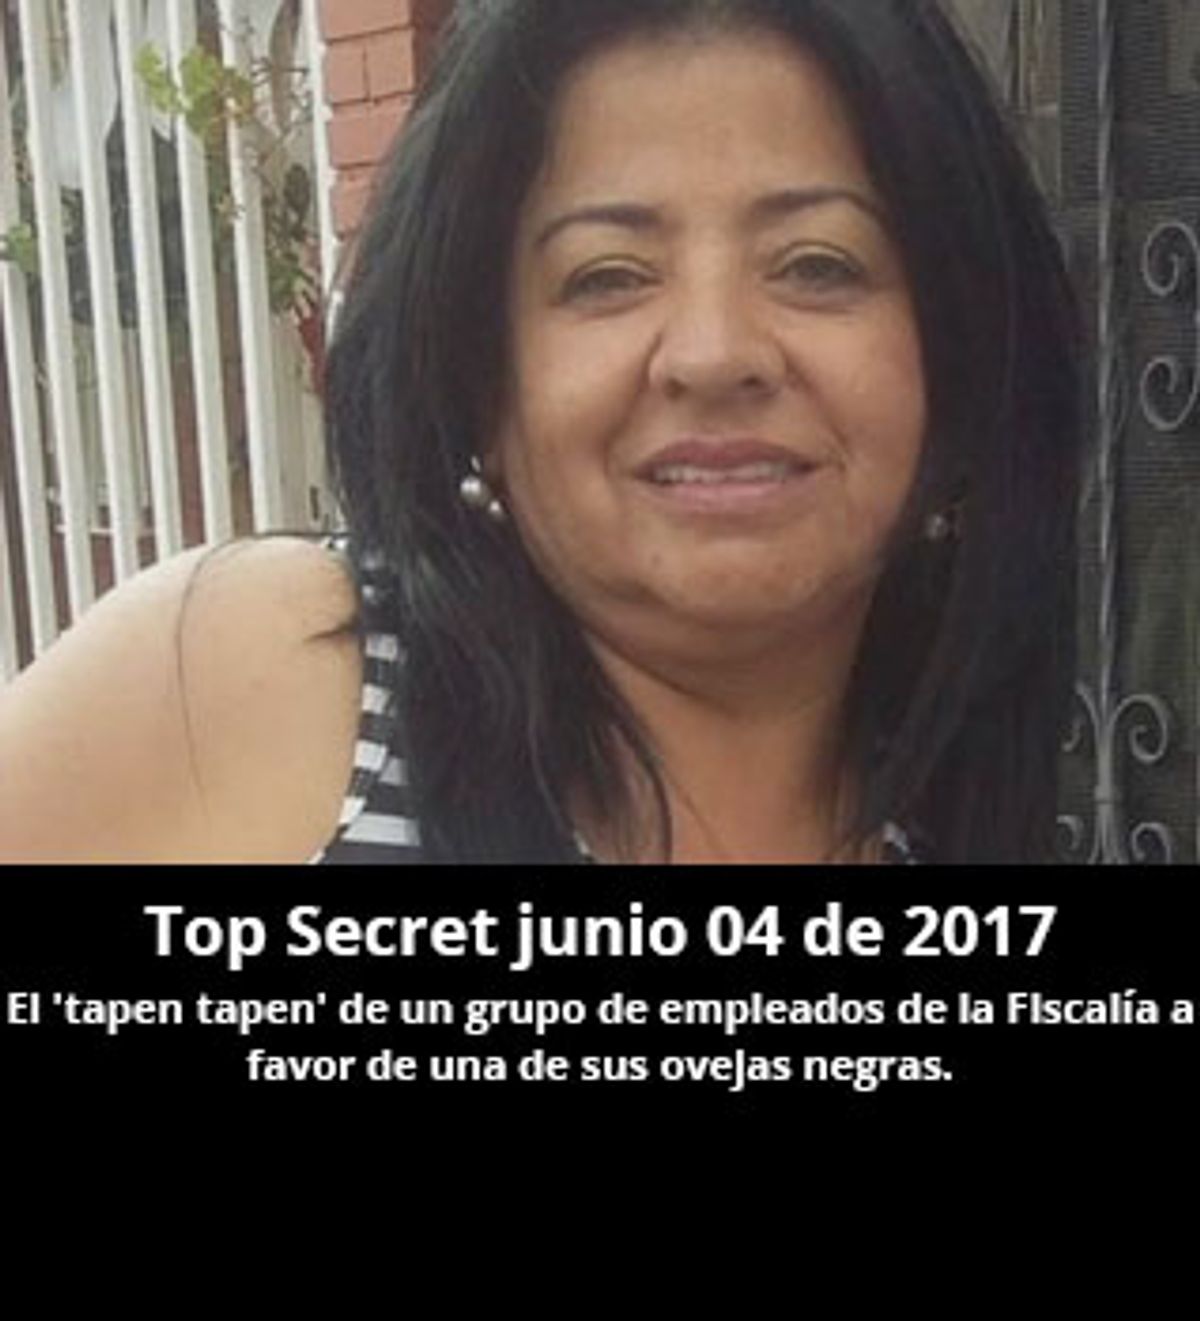 Top Secret junio 04 de 2017